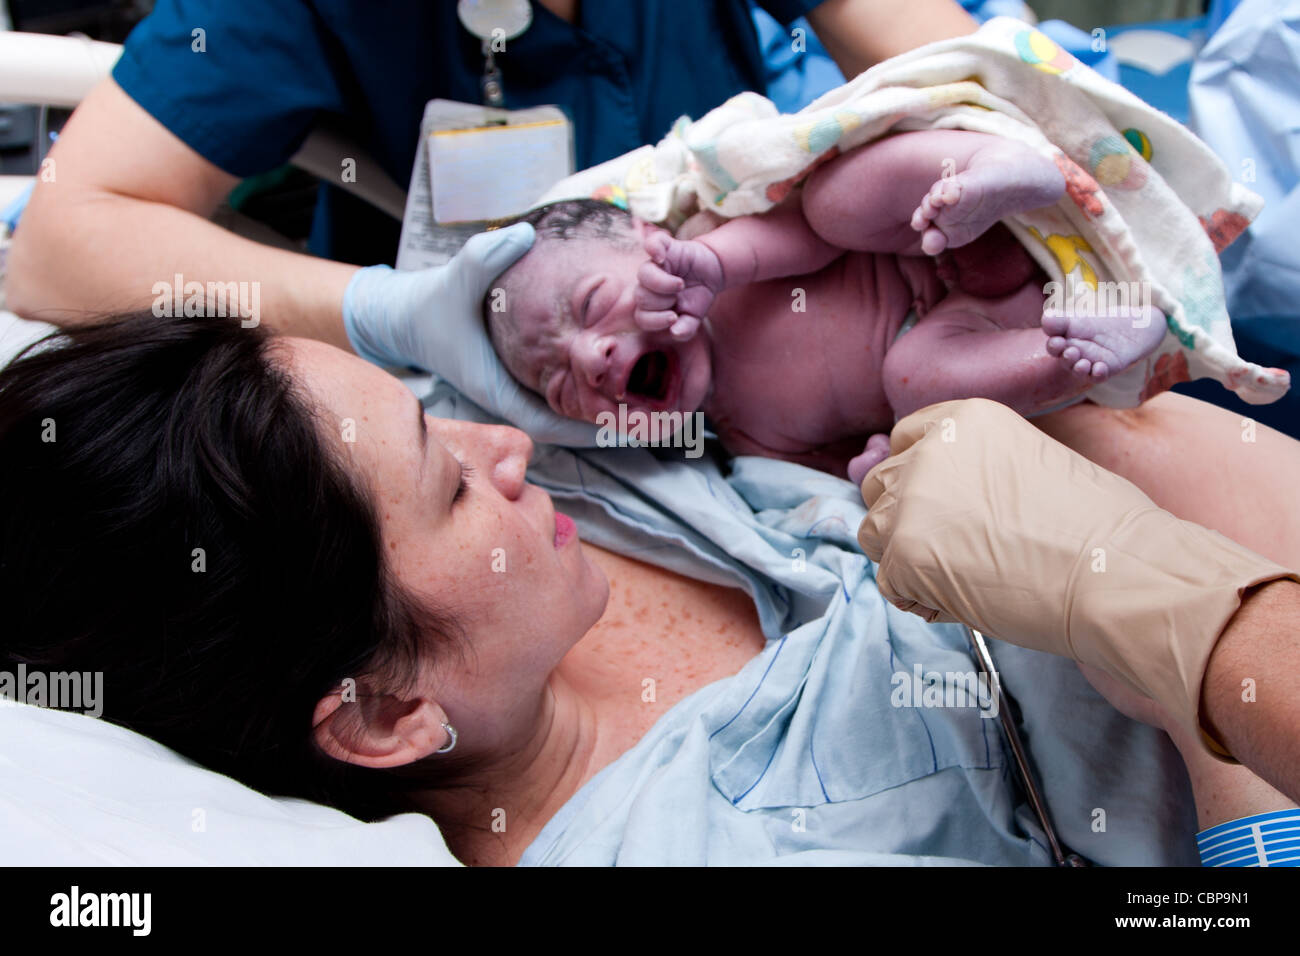 Nel travaglio del parto alla nascita di baby nuova vita in ospedale. Infant coperti di grasso e lanugo è il pianto e detenute da infermieri. Foto Stock